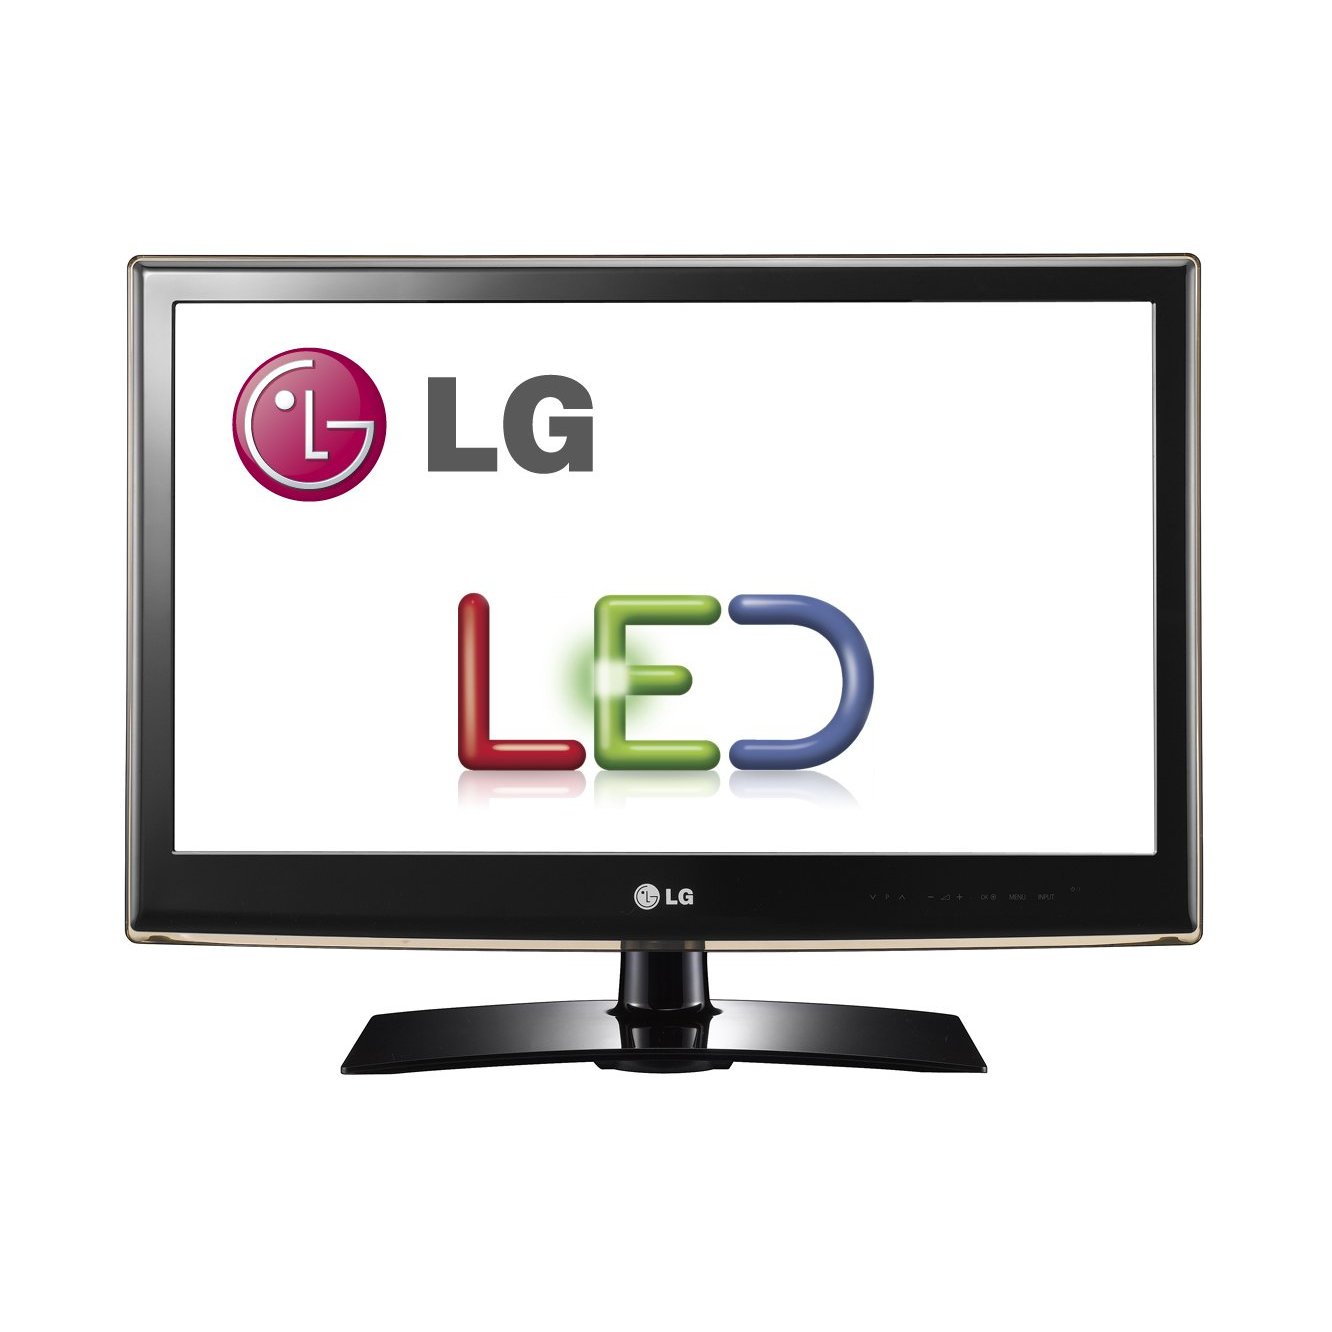 LG 32LV2500 32-Inch 720p 60 Hz LED HDTV - The Tech Journal